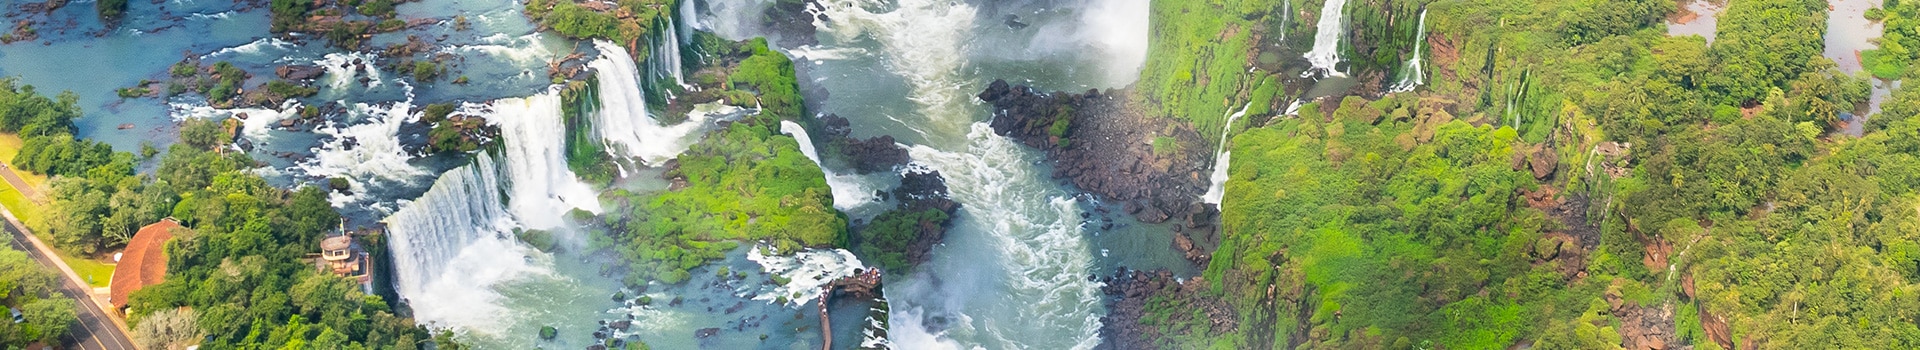 Internacional antônio joão - mato grosso do sul - Iguassu falls-cataratas